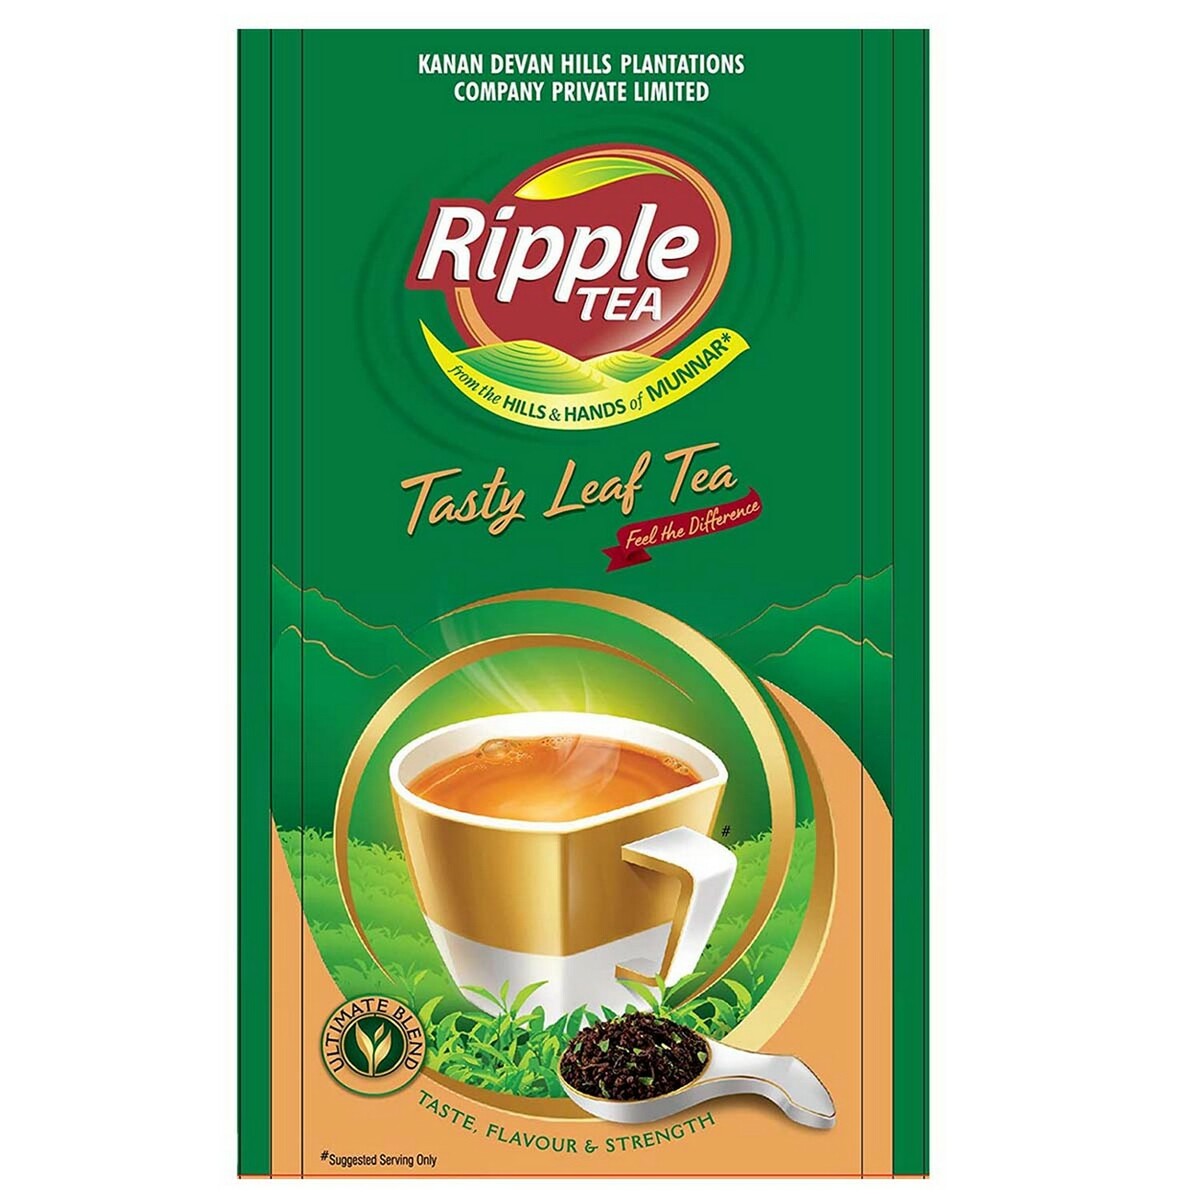 Ripple Premium Tea Leaf 500g